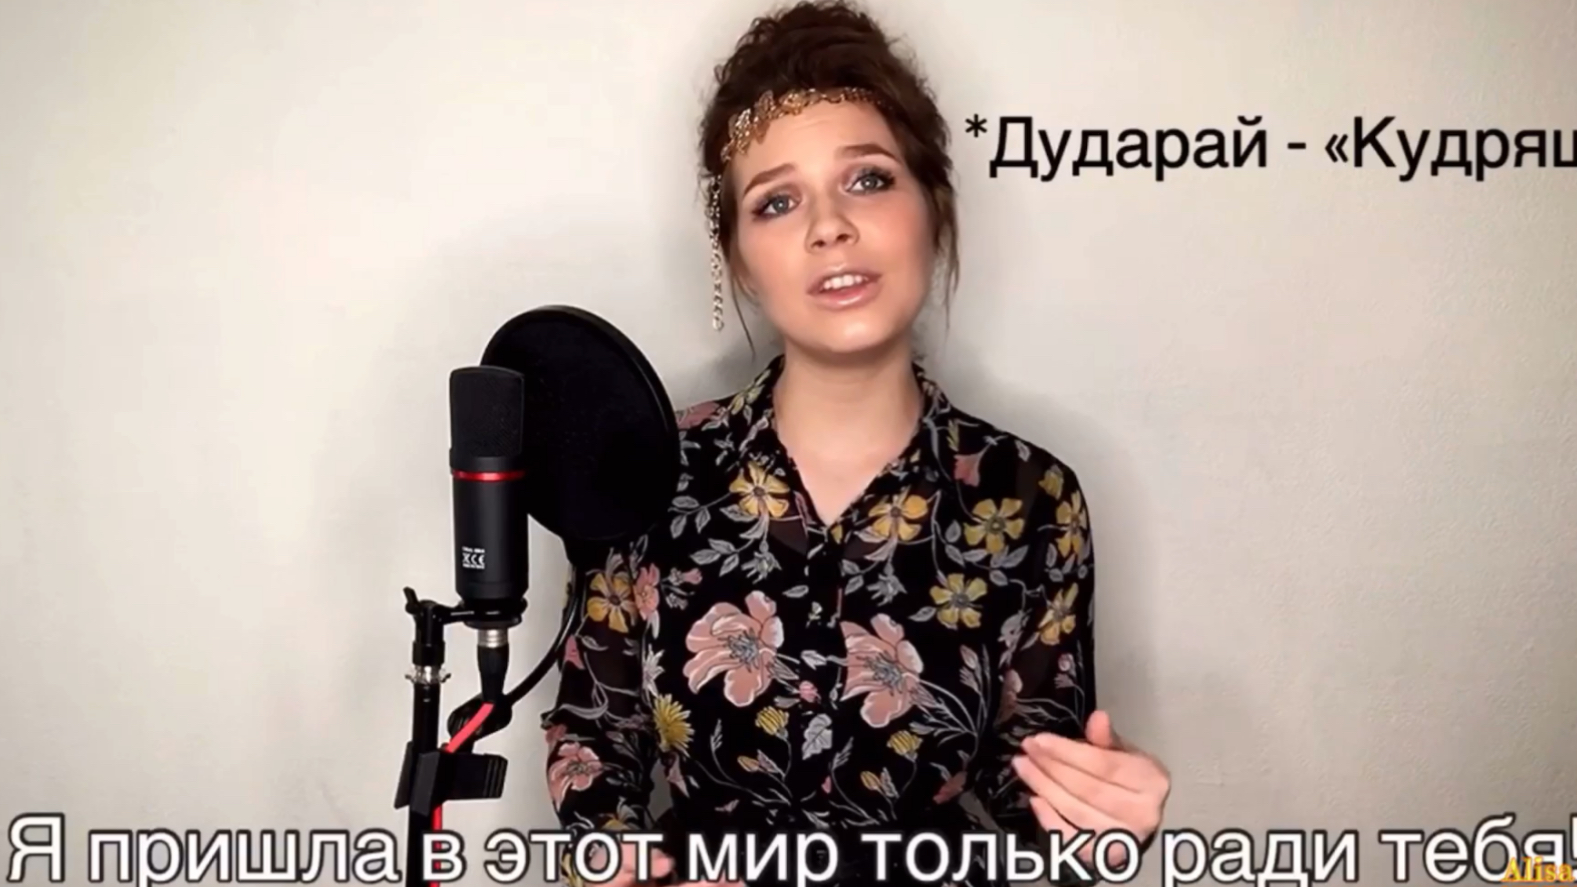 哈萨克民歌都达尔Дударай俄罗斯女歌演唱哈萨克民歌